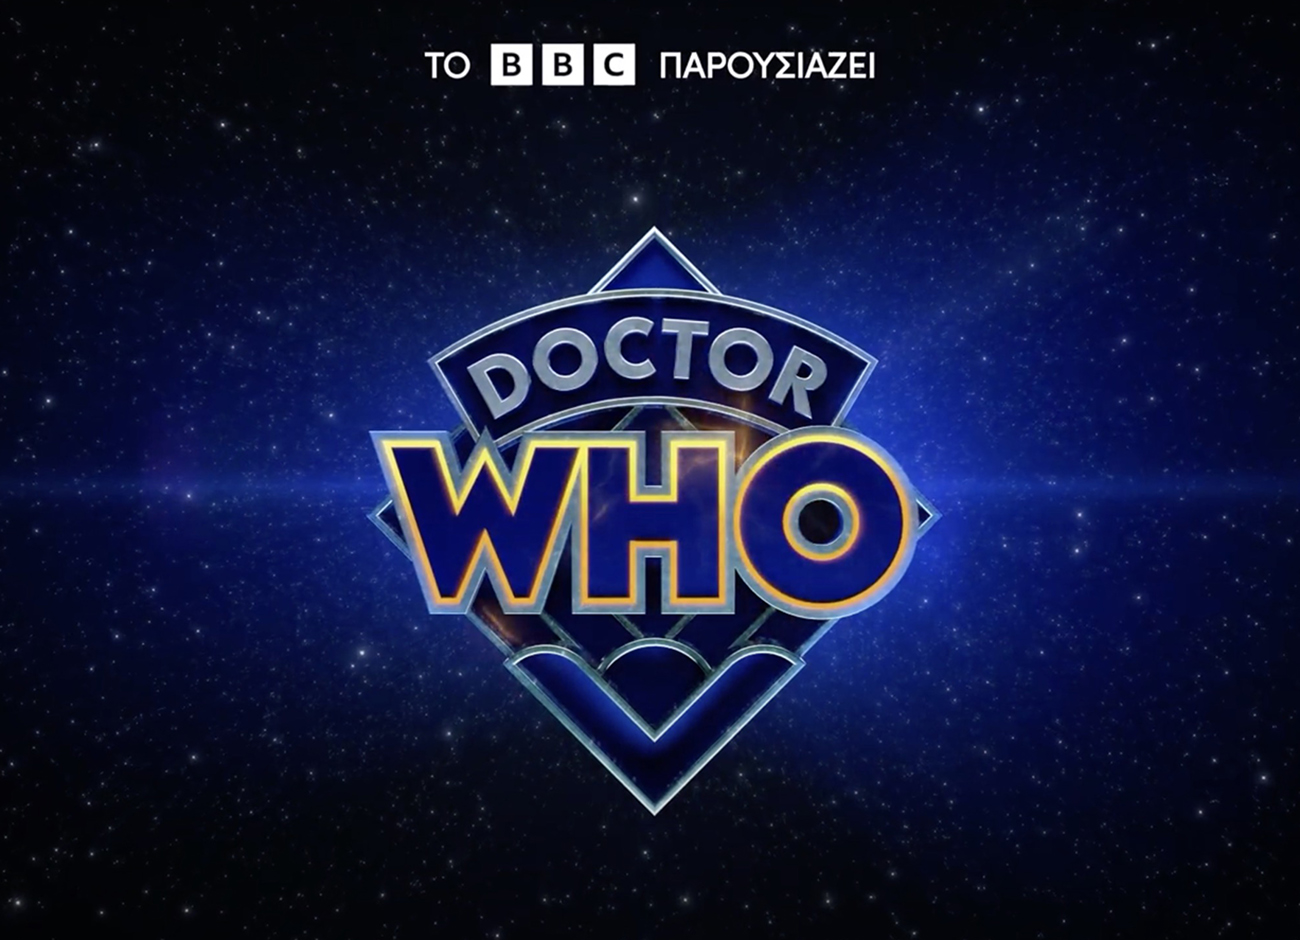 Τα τρία νέα επεισόδια «Doctor Who» από τις 25 Νοεμβρίου στο Disney+